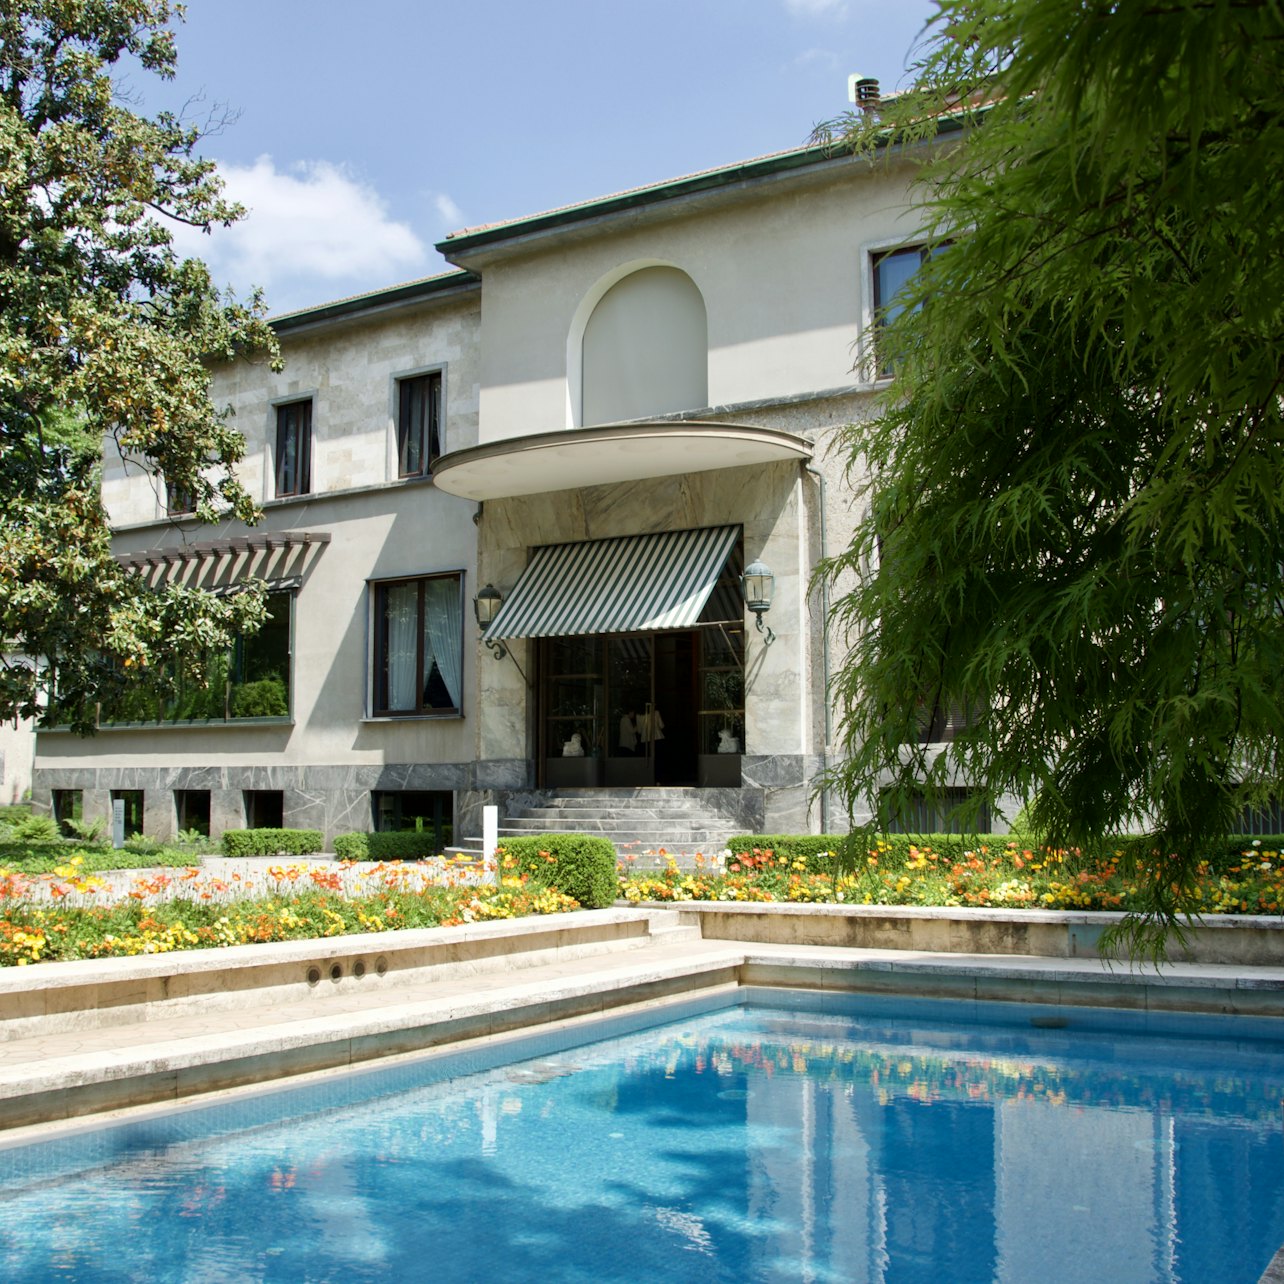 Villa Necchi Campiglio - Accommodations in Milan